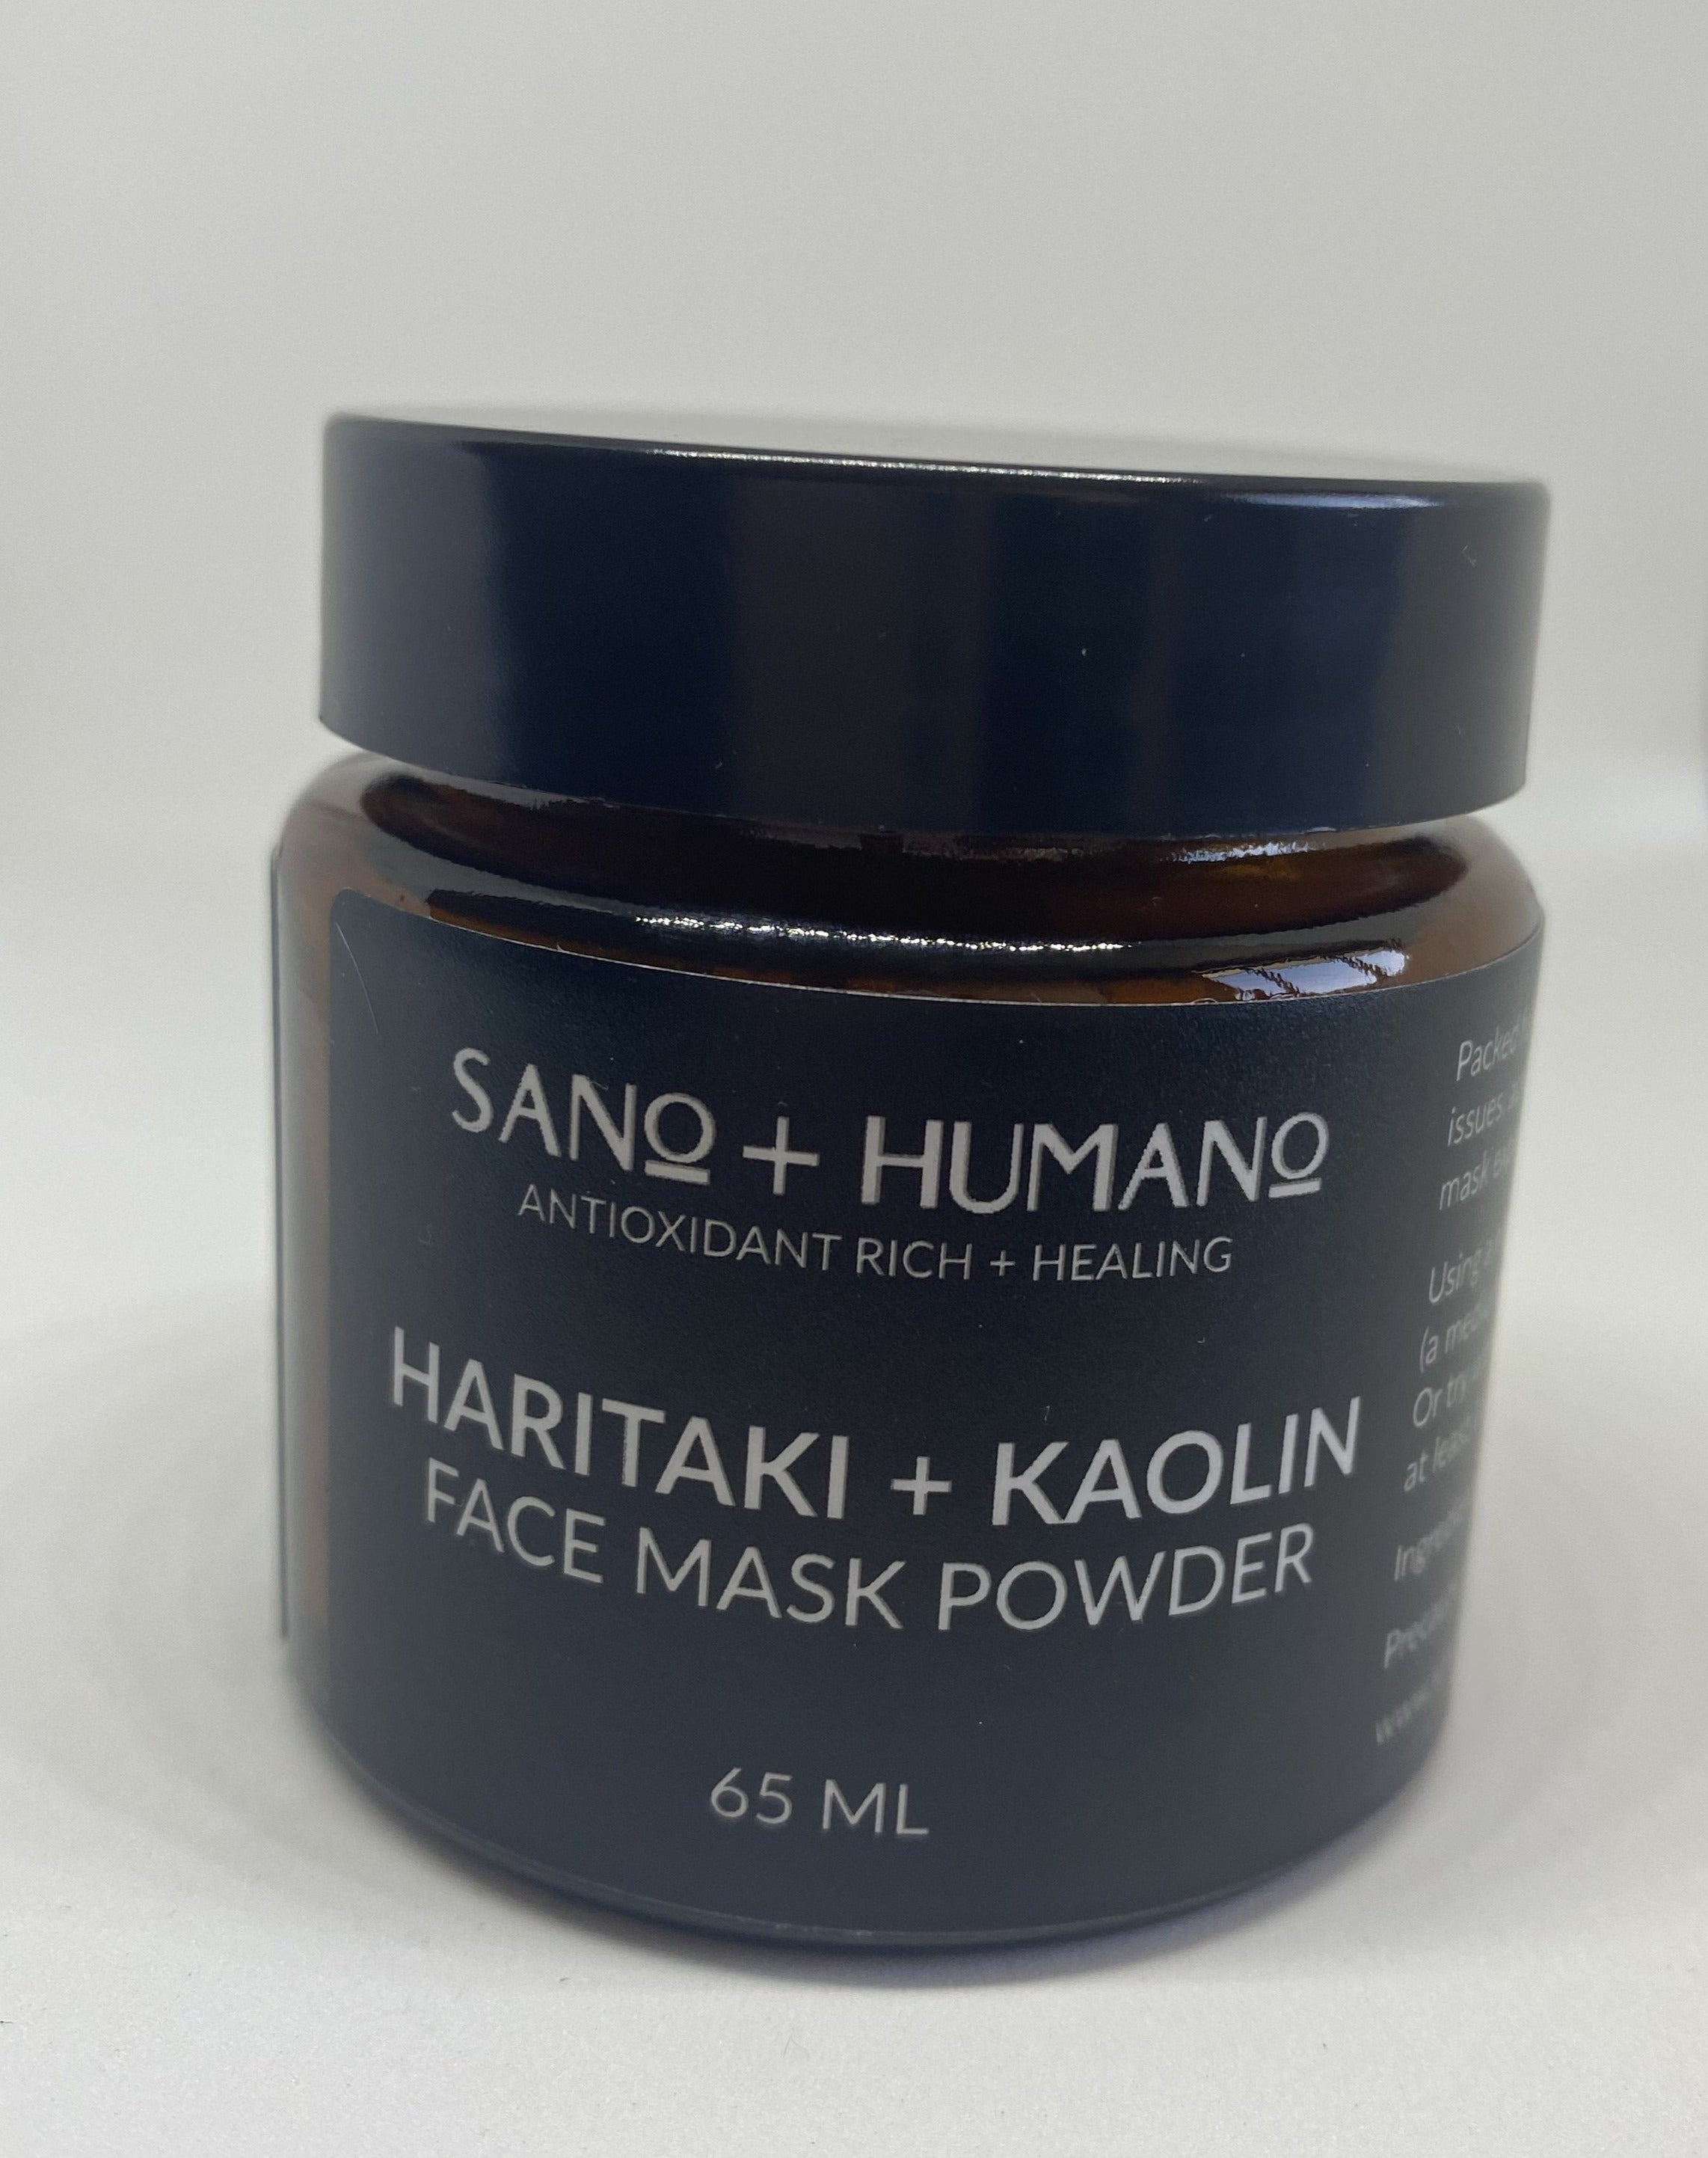 Haritaki + Kaolin Face Mask Powder